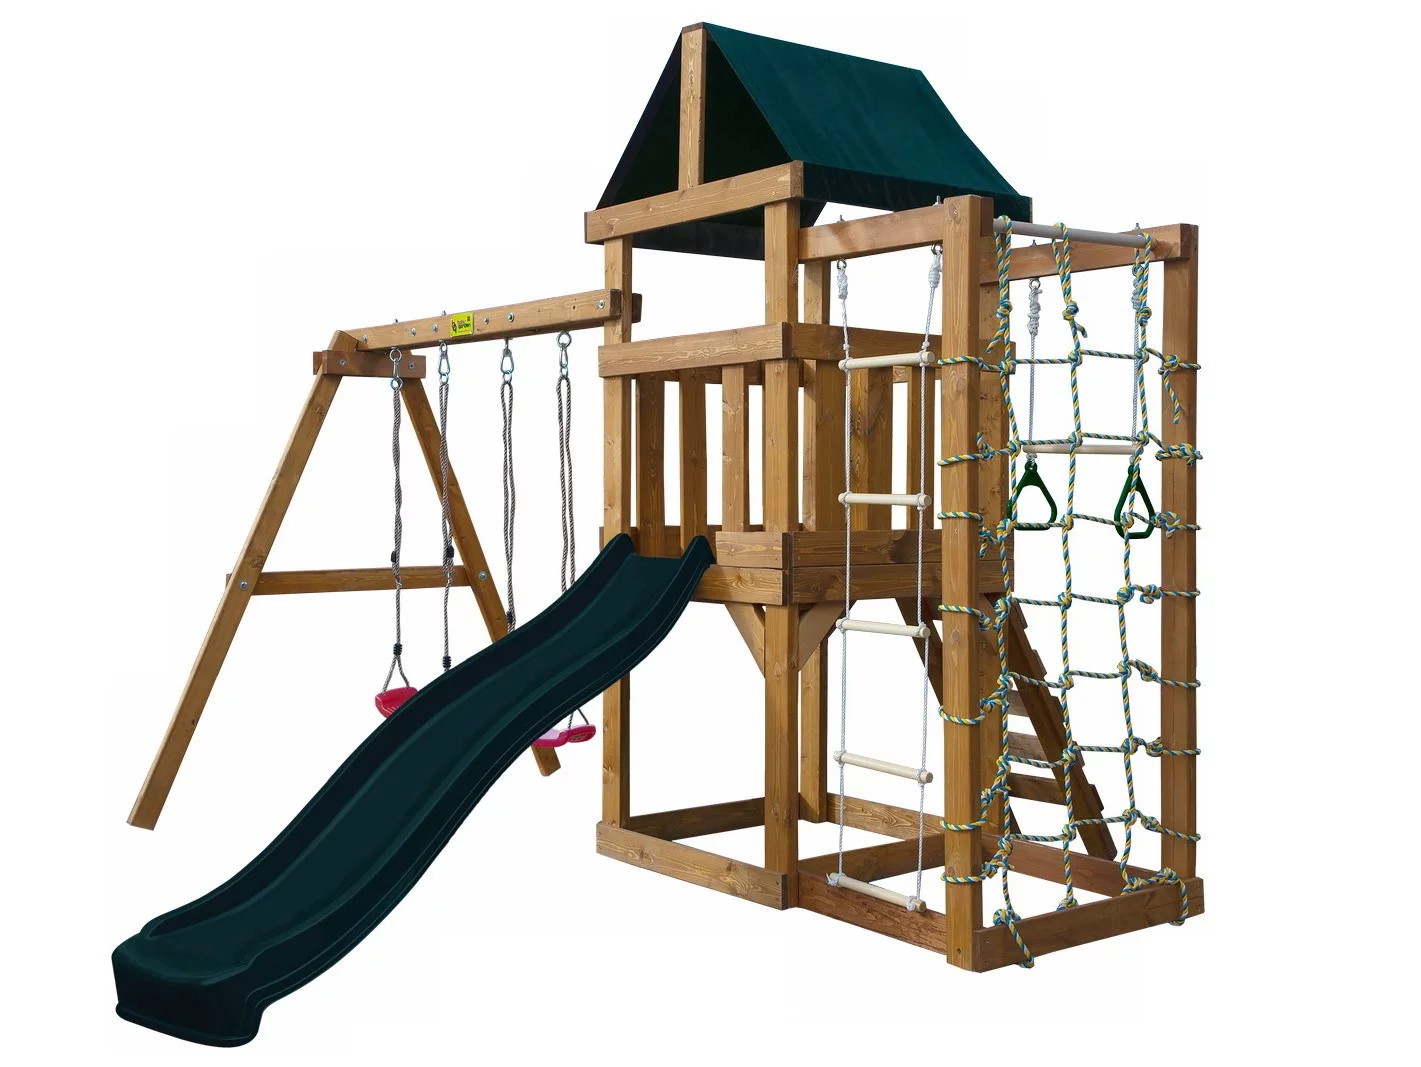 Детская игровая площадка BabyGarden Play 10 DG с канатной сеткой, веревочной  лестницей, трапецией и темно-зеленой горкой 2,20 метра купить в Москве и МО  | ZonaSporta.com